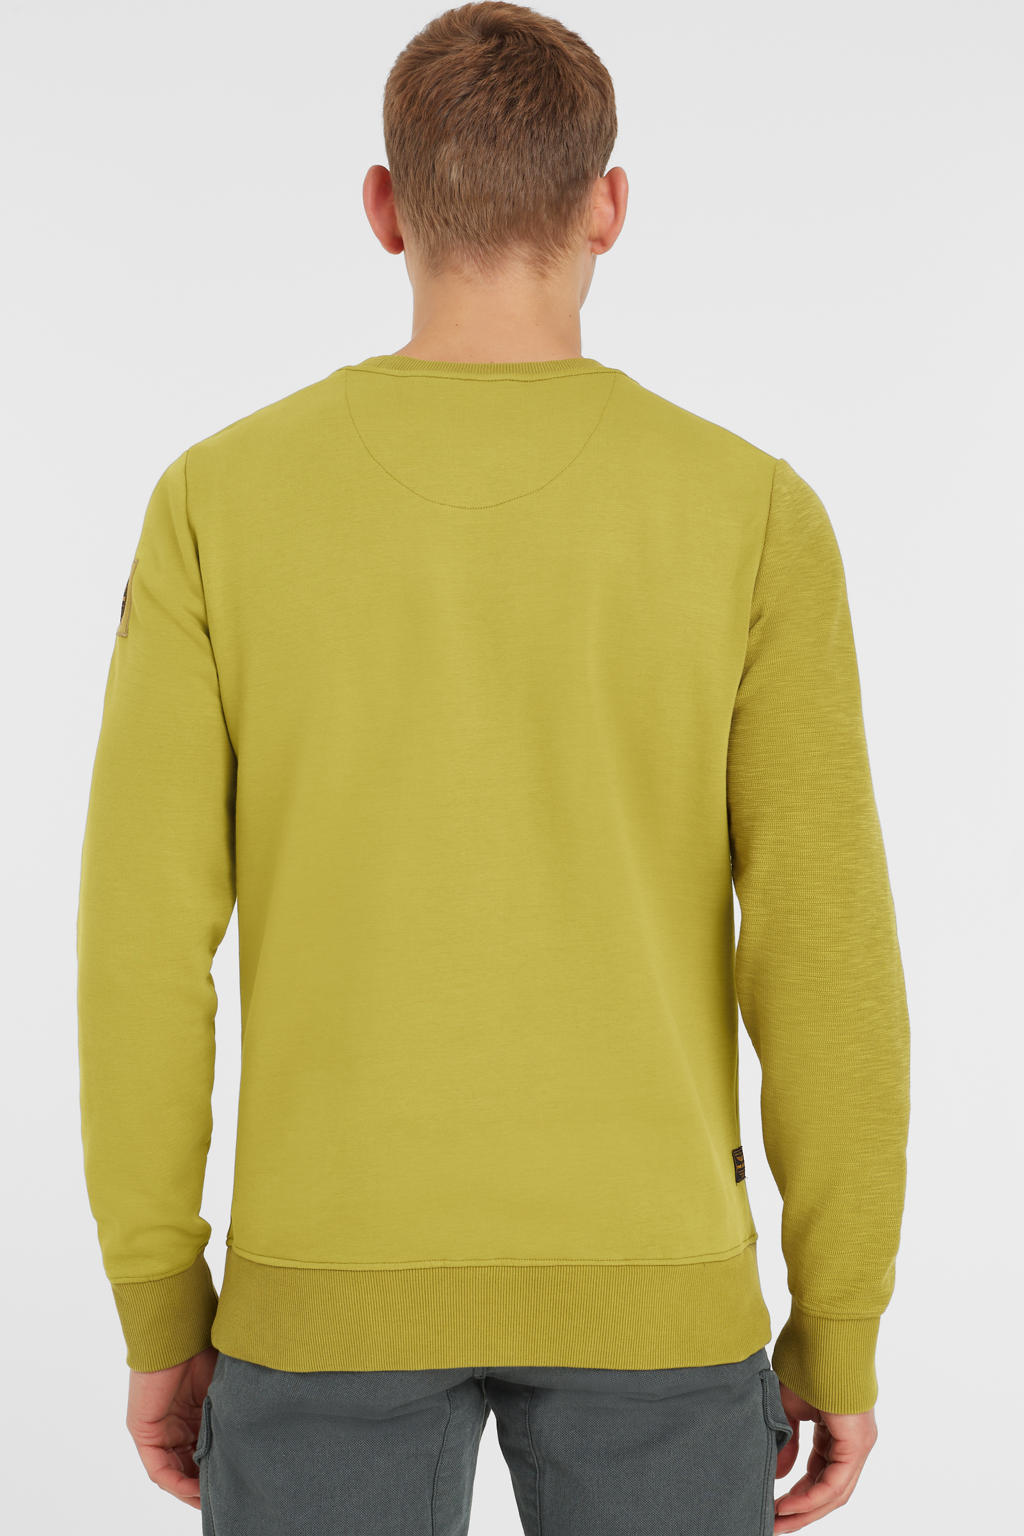 PME Legend sweater met logo 8210 willow